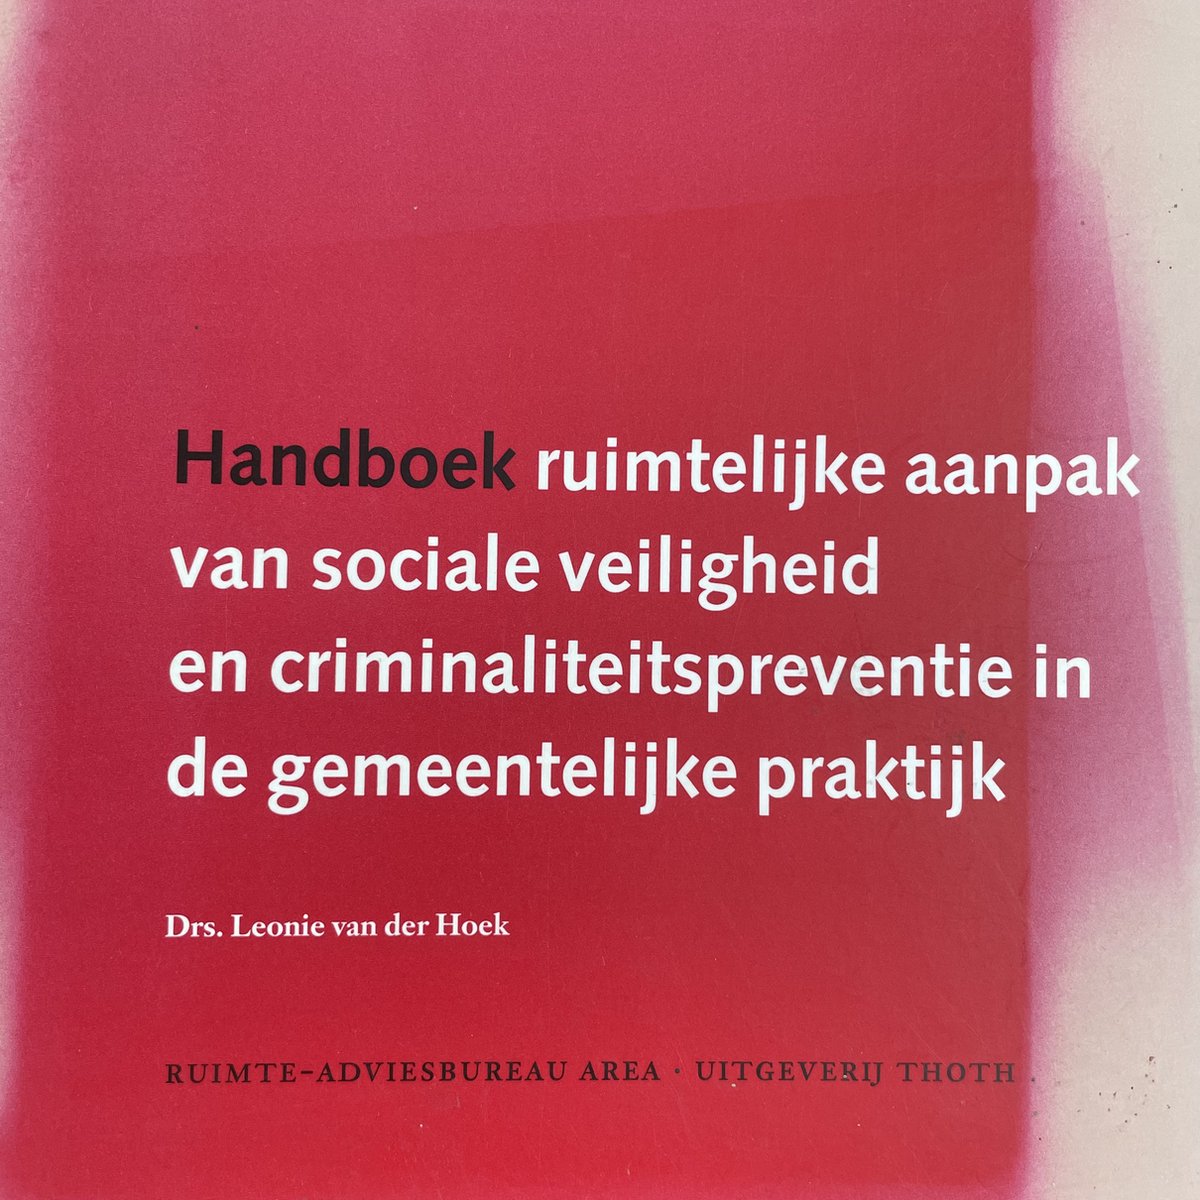 Handboek ruimtelijke aanpak sociale